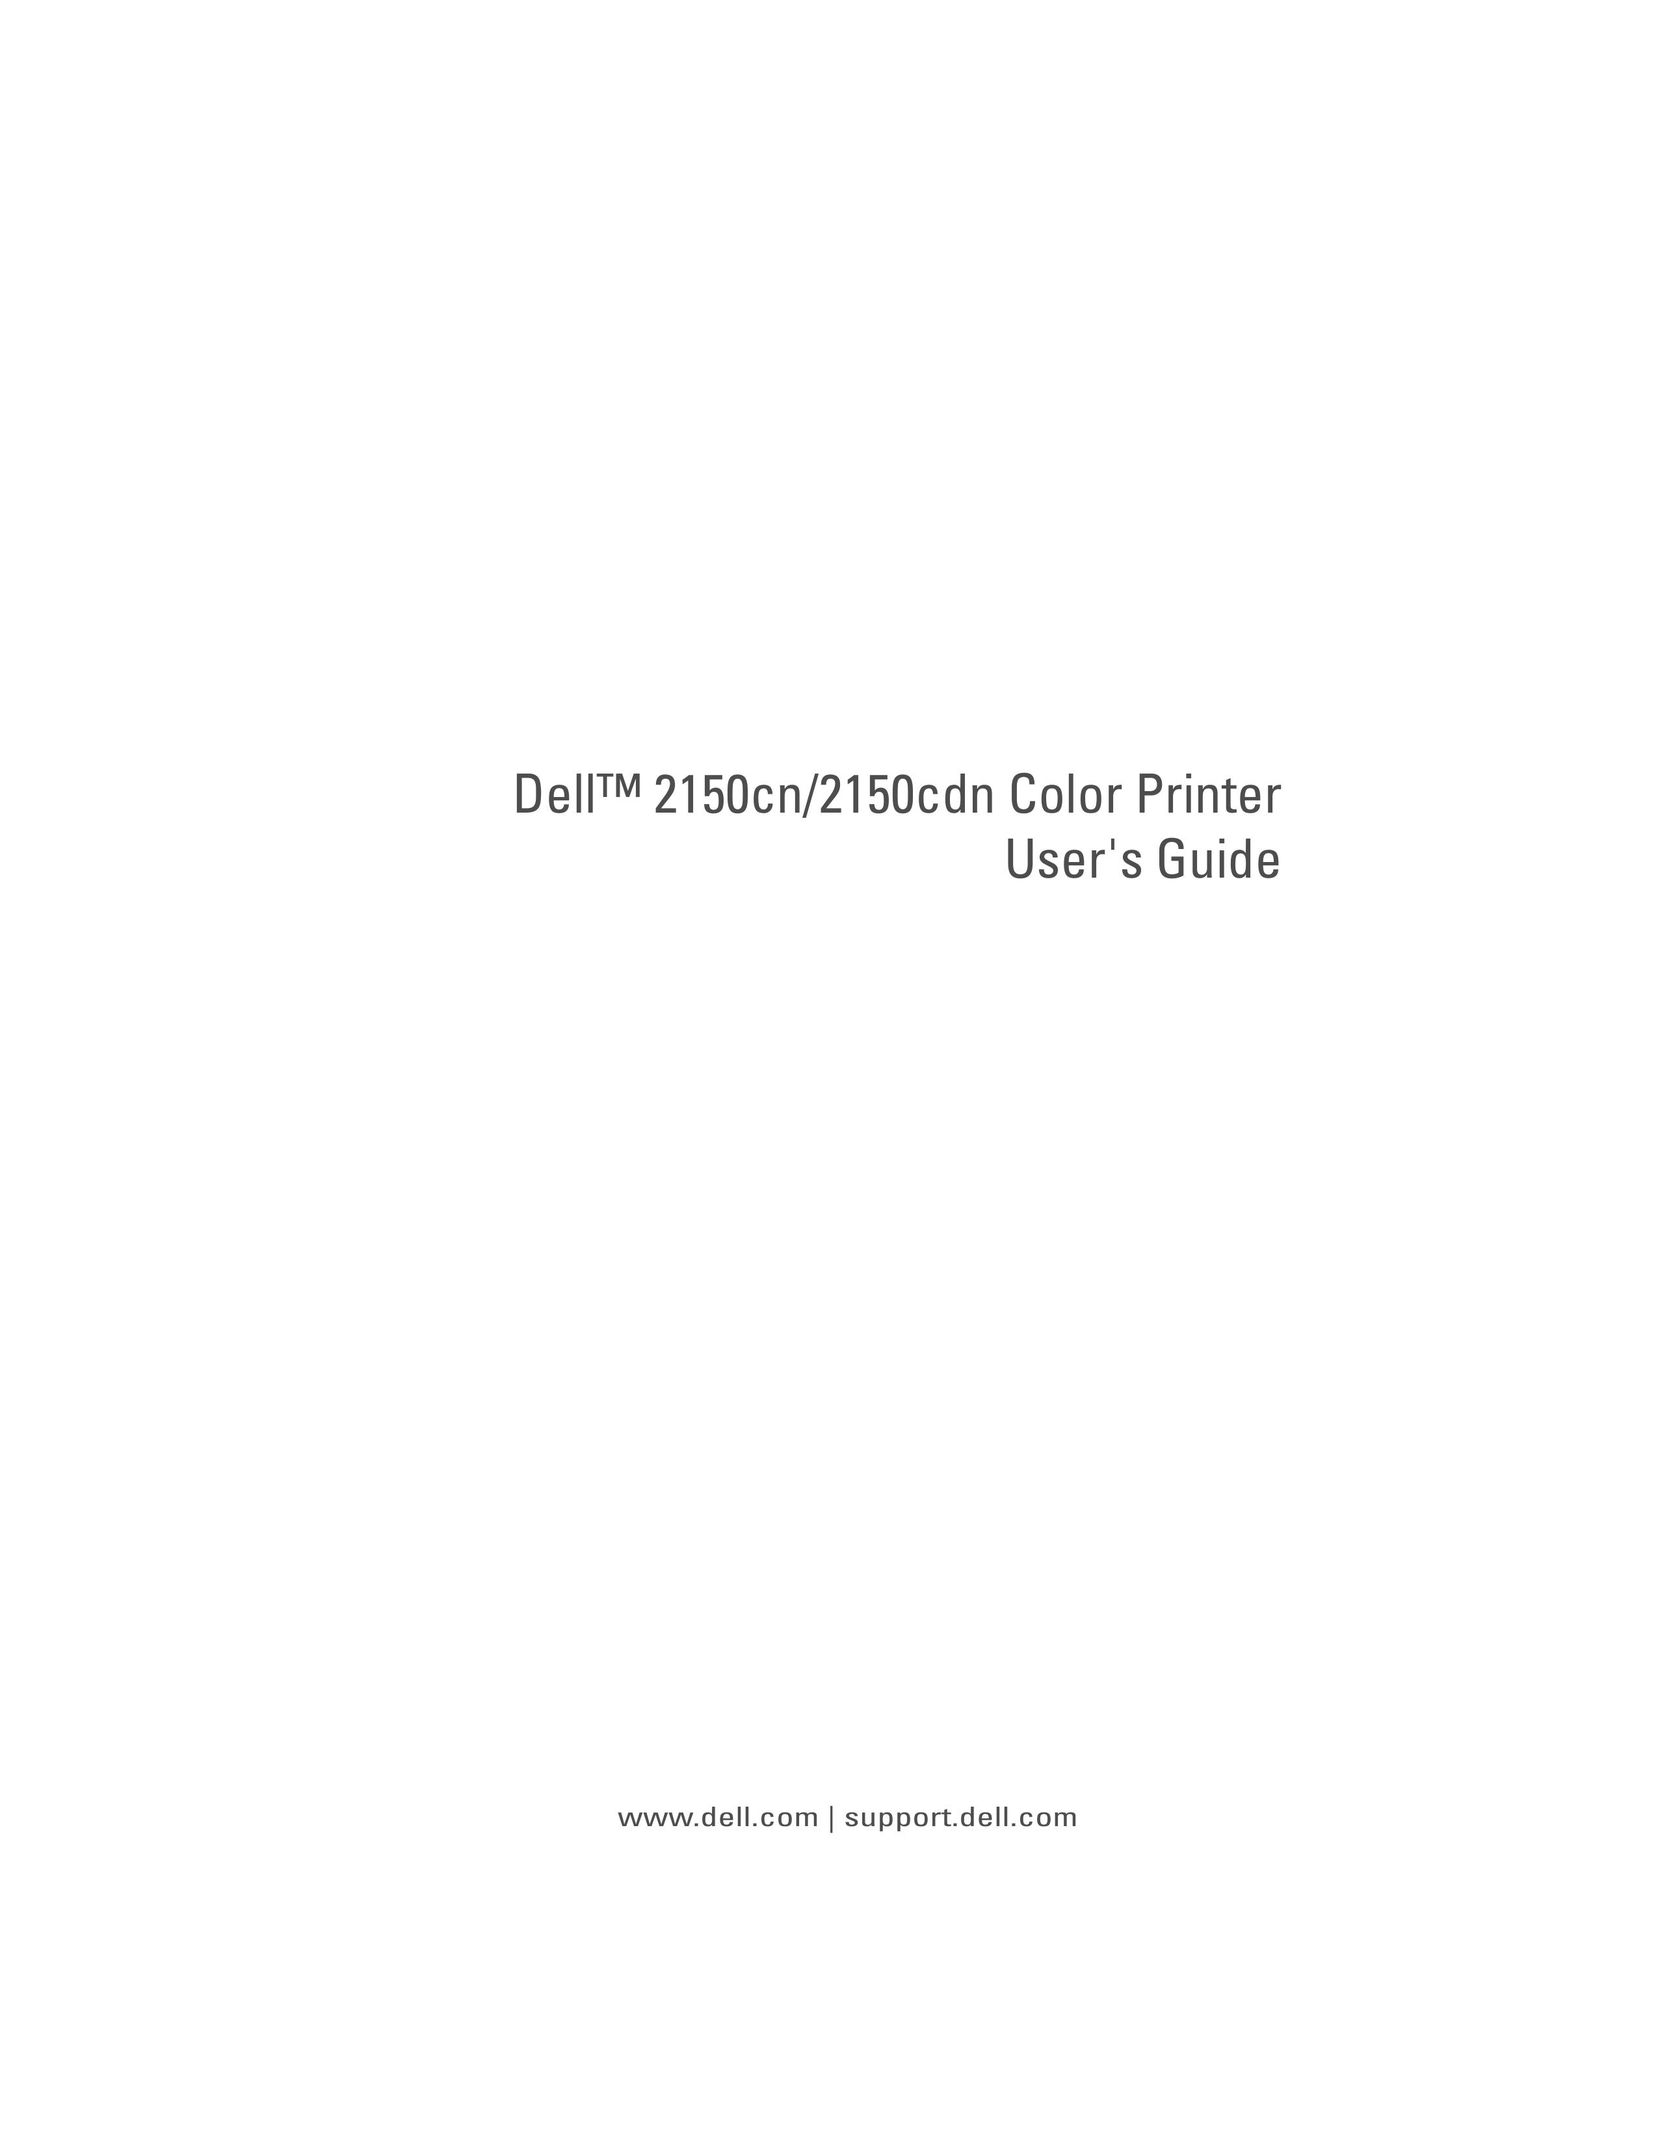 Dell 2150cn/2150cdn Printer User Manual